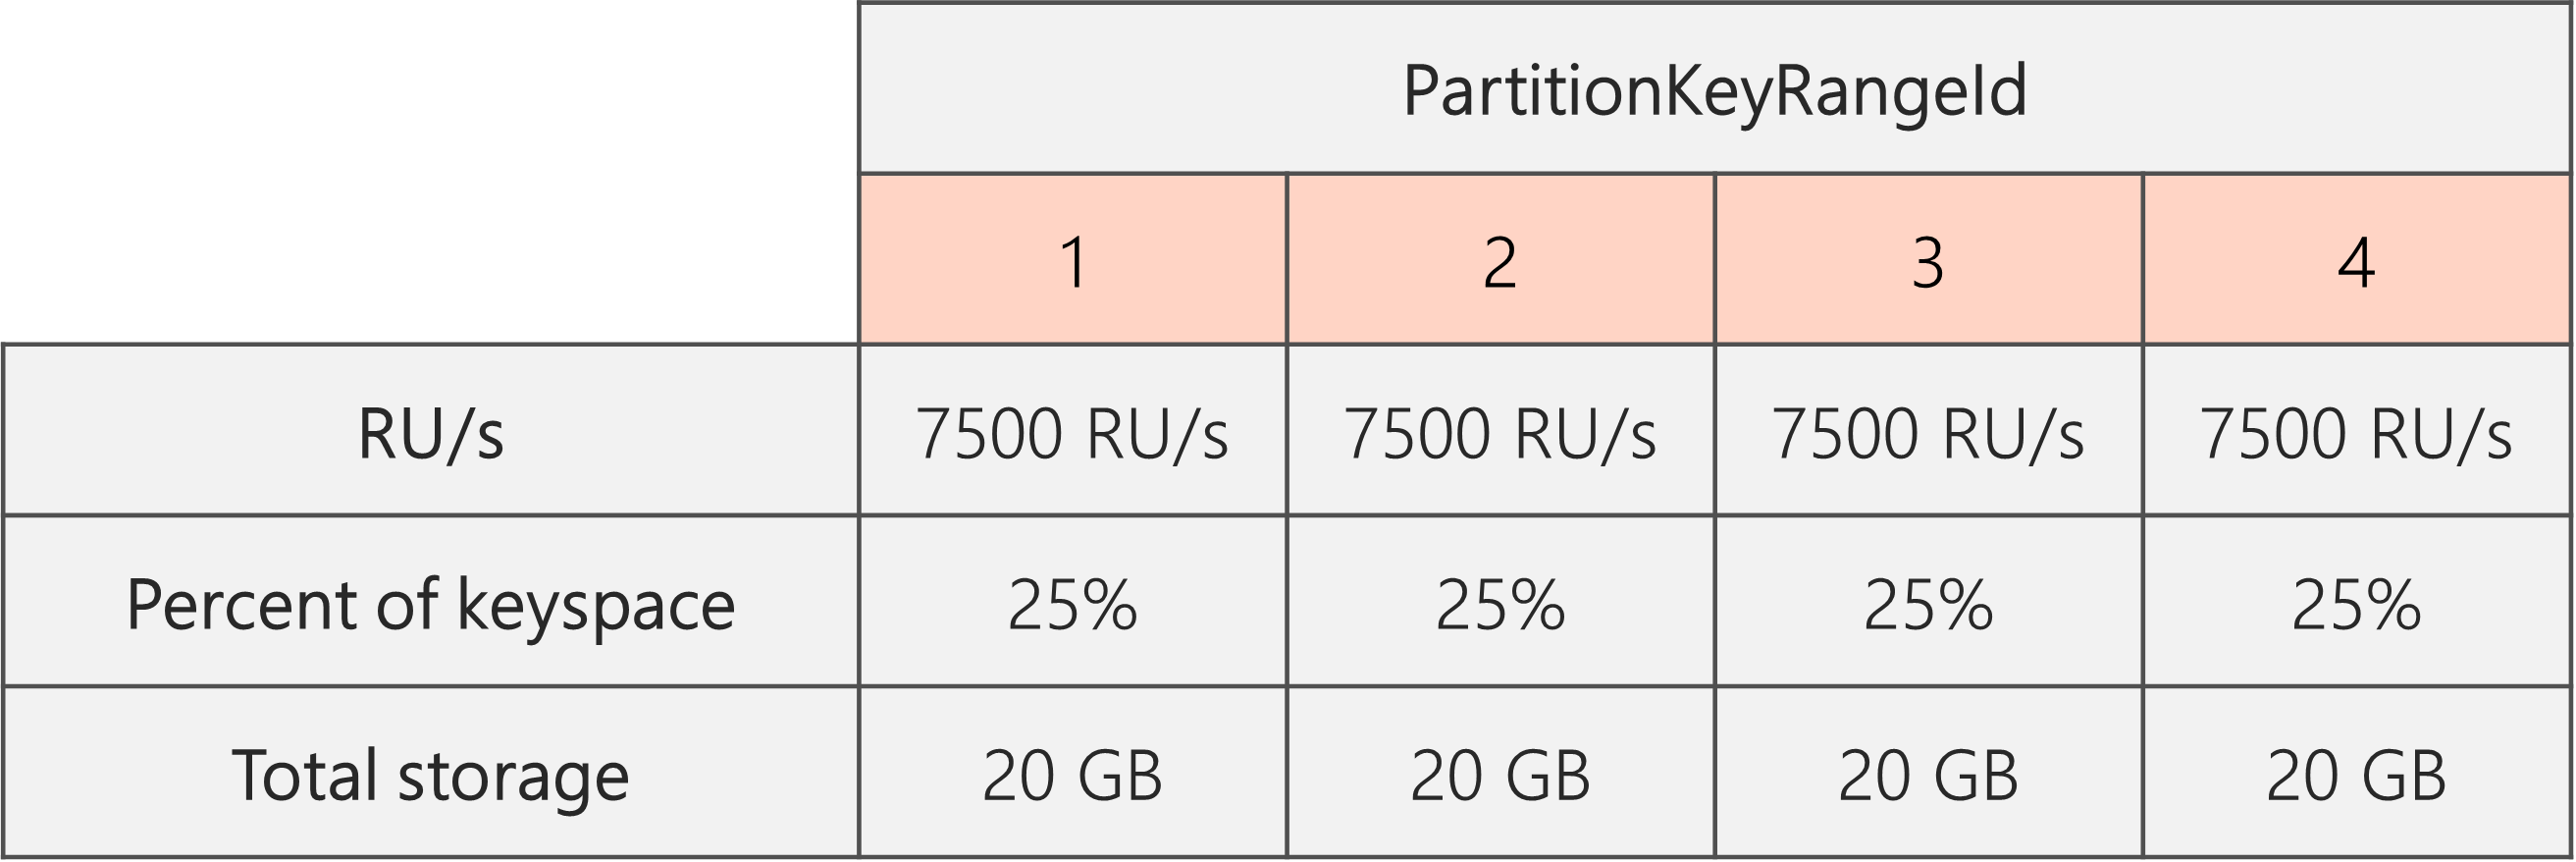 Al termine della divisione e le UR/sec sono state abbassate da 40.000 UR/s a 30.000 UR/sec, sono presenti 4 PartitionKeyRangeId, ognuna con 7500 UR/s e il 25% dello spazio chiavi totale (20 GB)